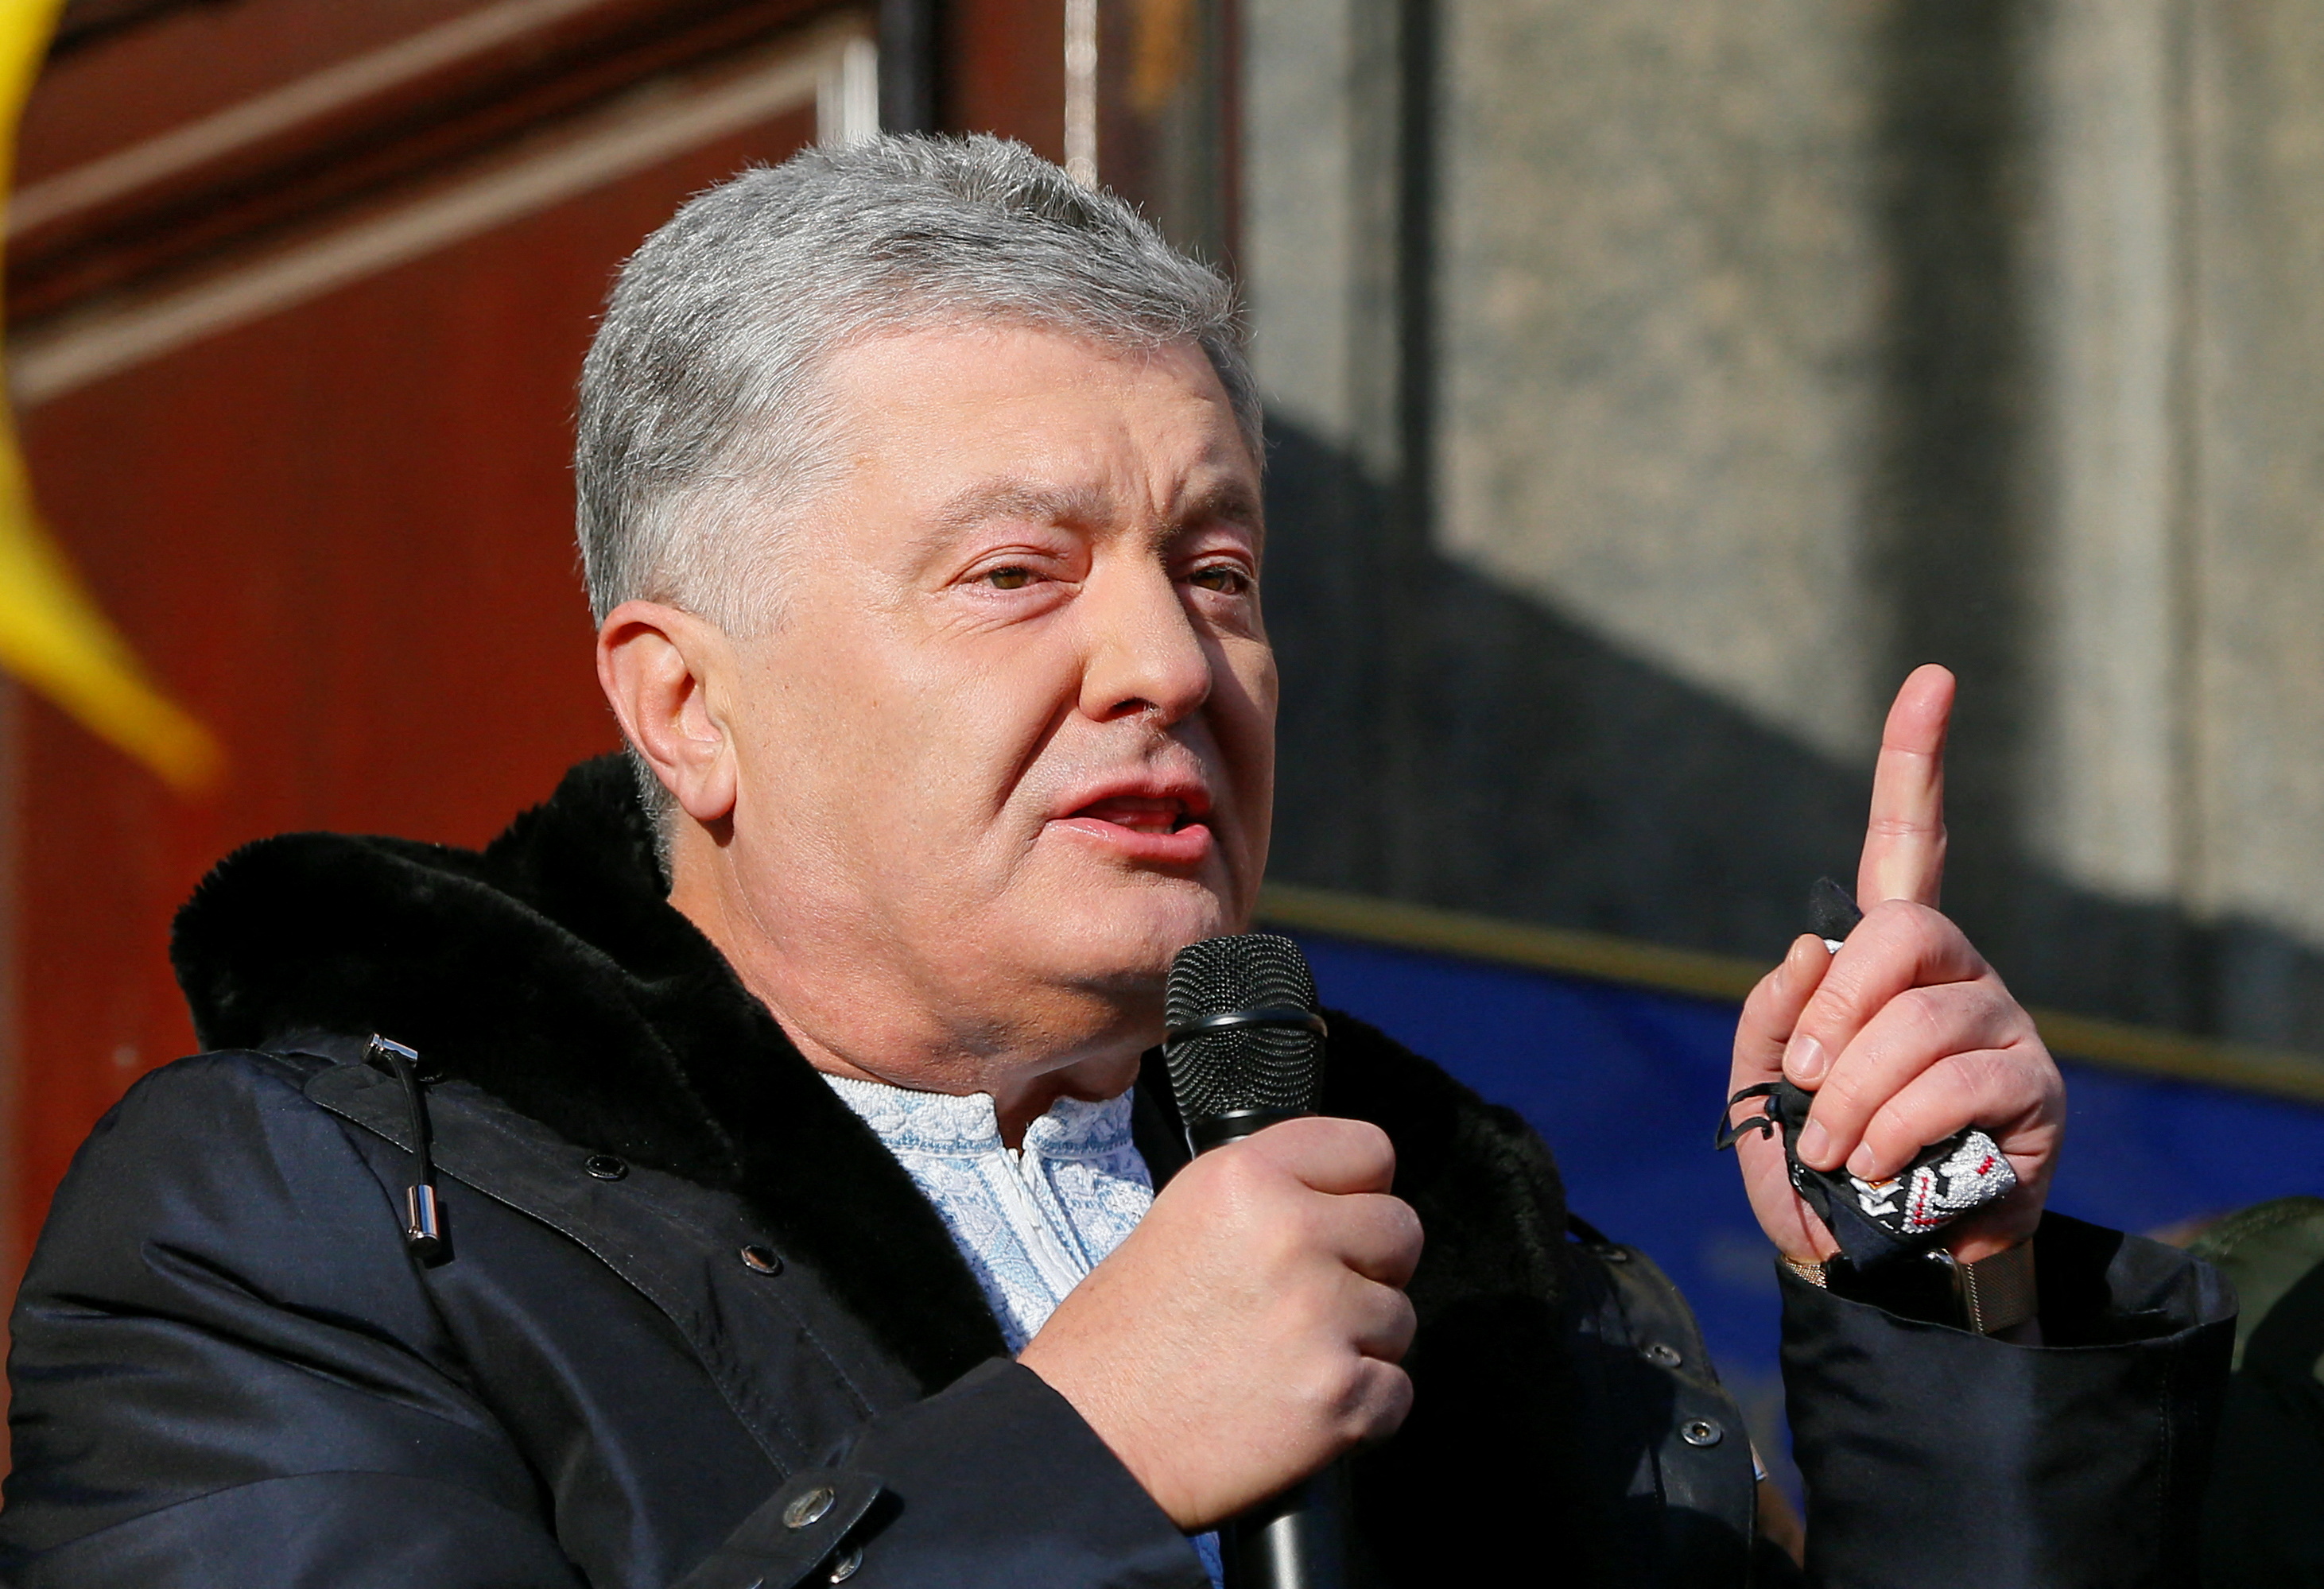 L’ex presidente ucraino afferma che gli è stato vietato di lasciare il Paese